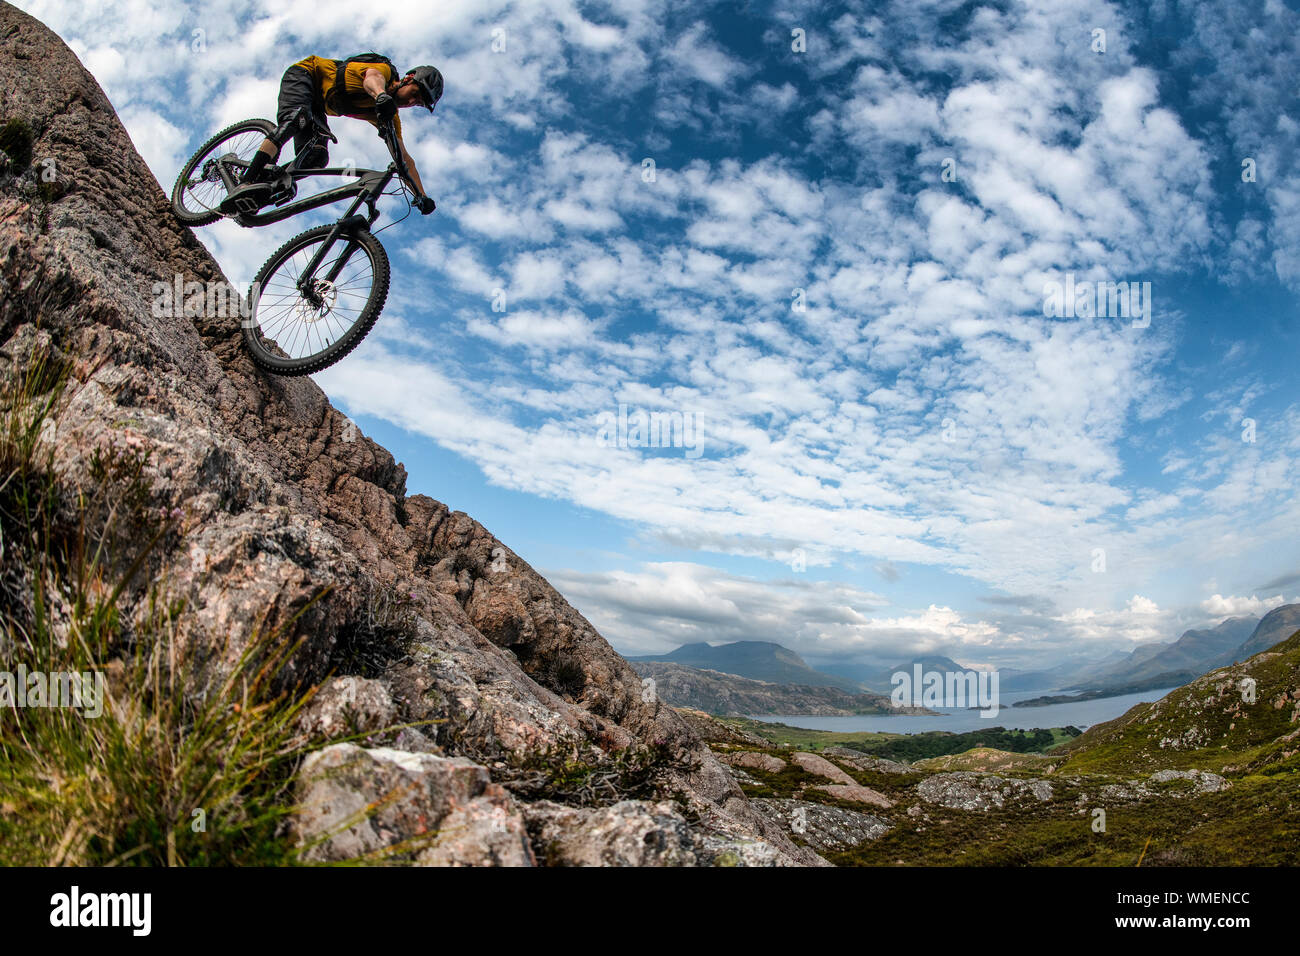 Un hombre monta una bicicleta de montaña por una losa de roca en la península De La Región De Las tierras altas del noroeste de Escocia. Foto de stock